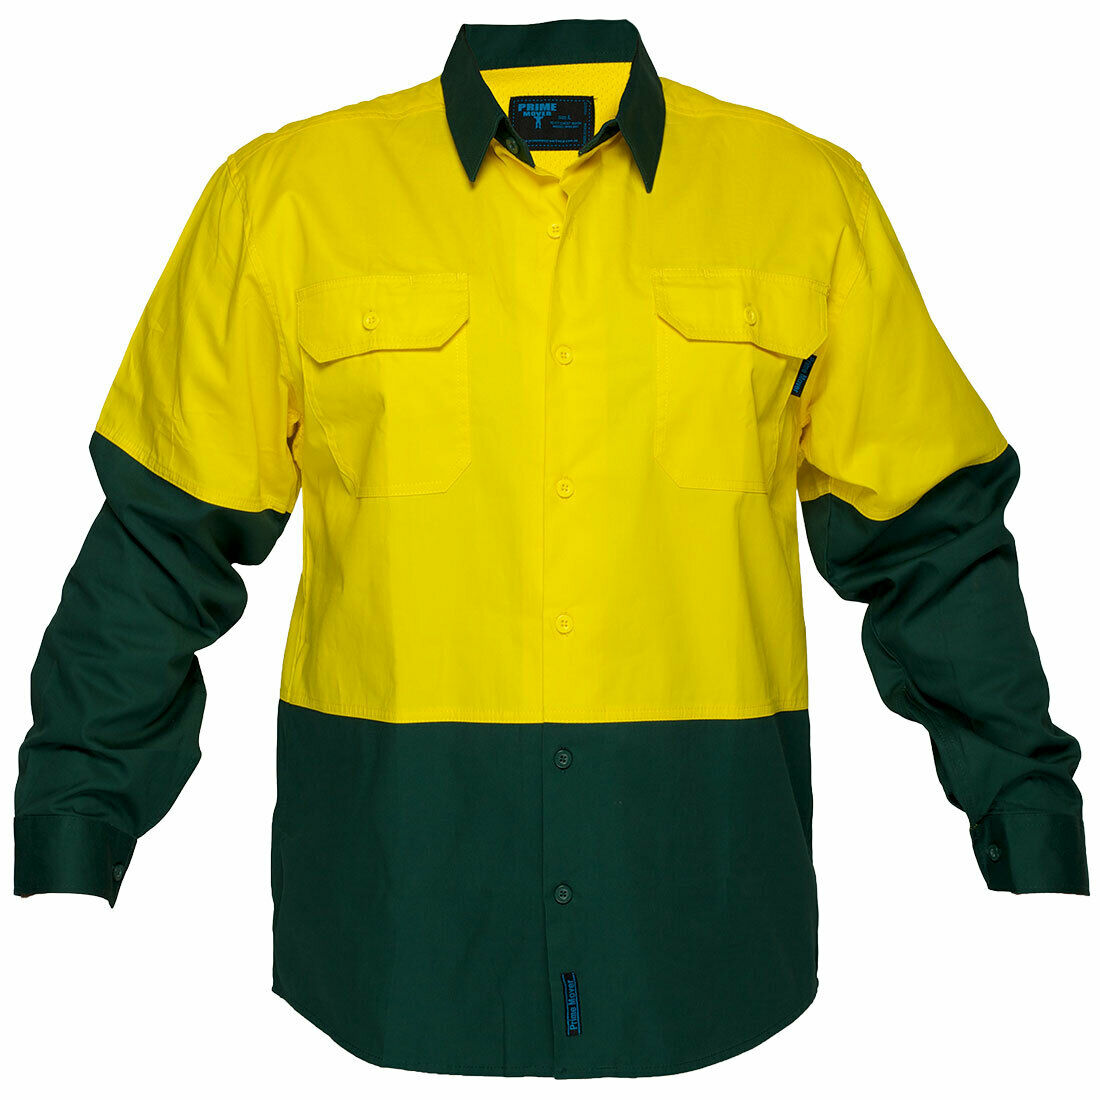 Portwest Mens Prime Mover Hi-Vis Lightweight Gusset Sleeves Shirt Comfort MS801-Collins Clothing Co